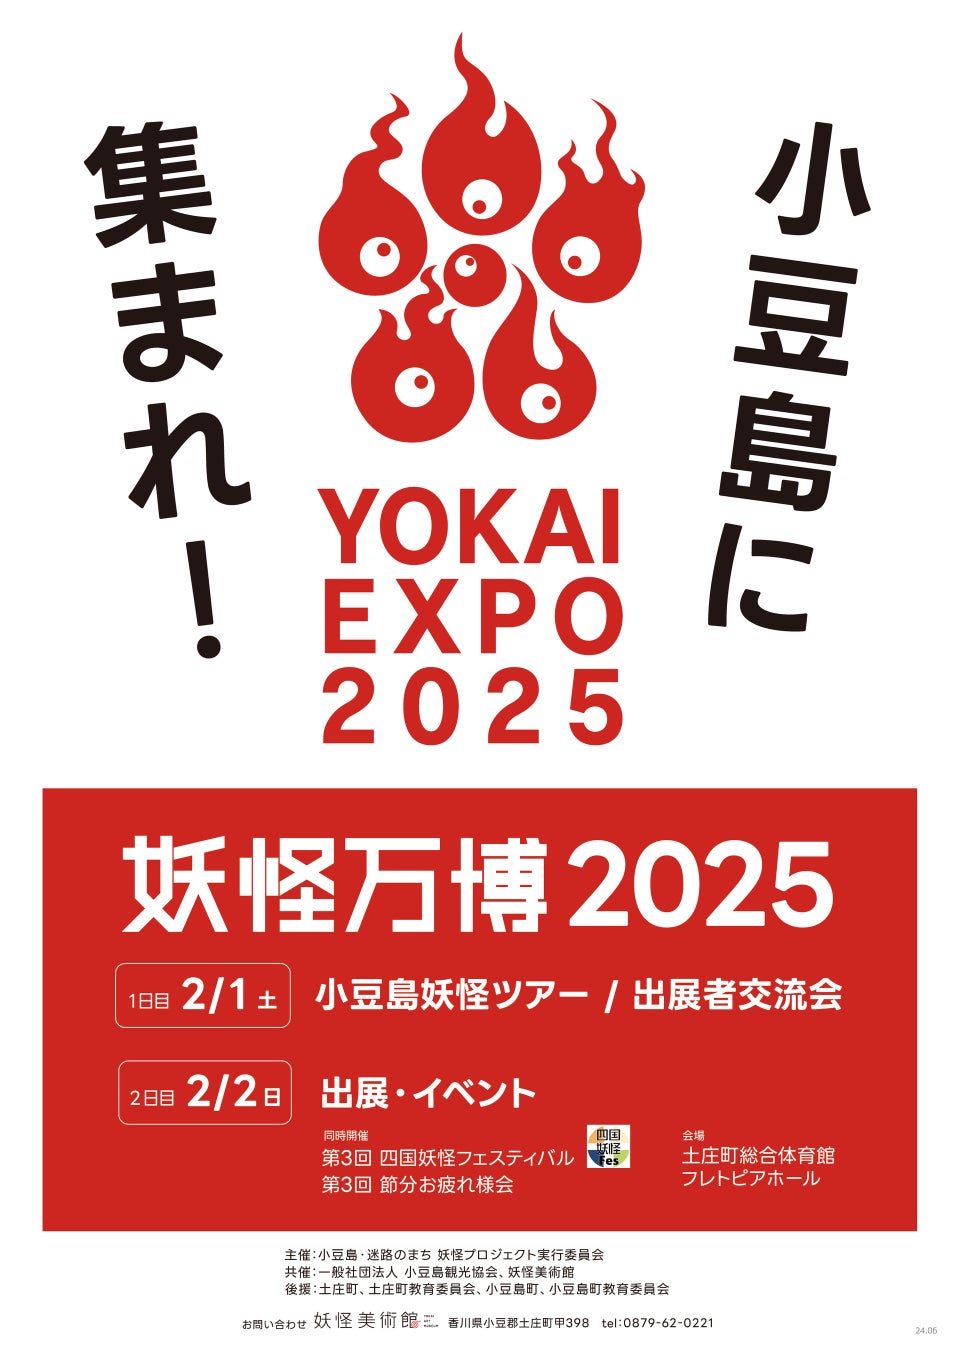 妖怪をテーマとしたイベント「妖怪万博2025」香川県・小豆島で2月2日の節分にあわせて開催